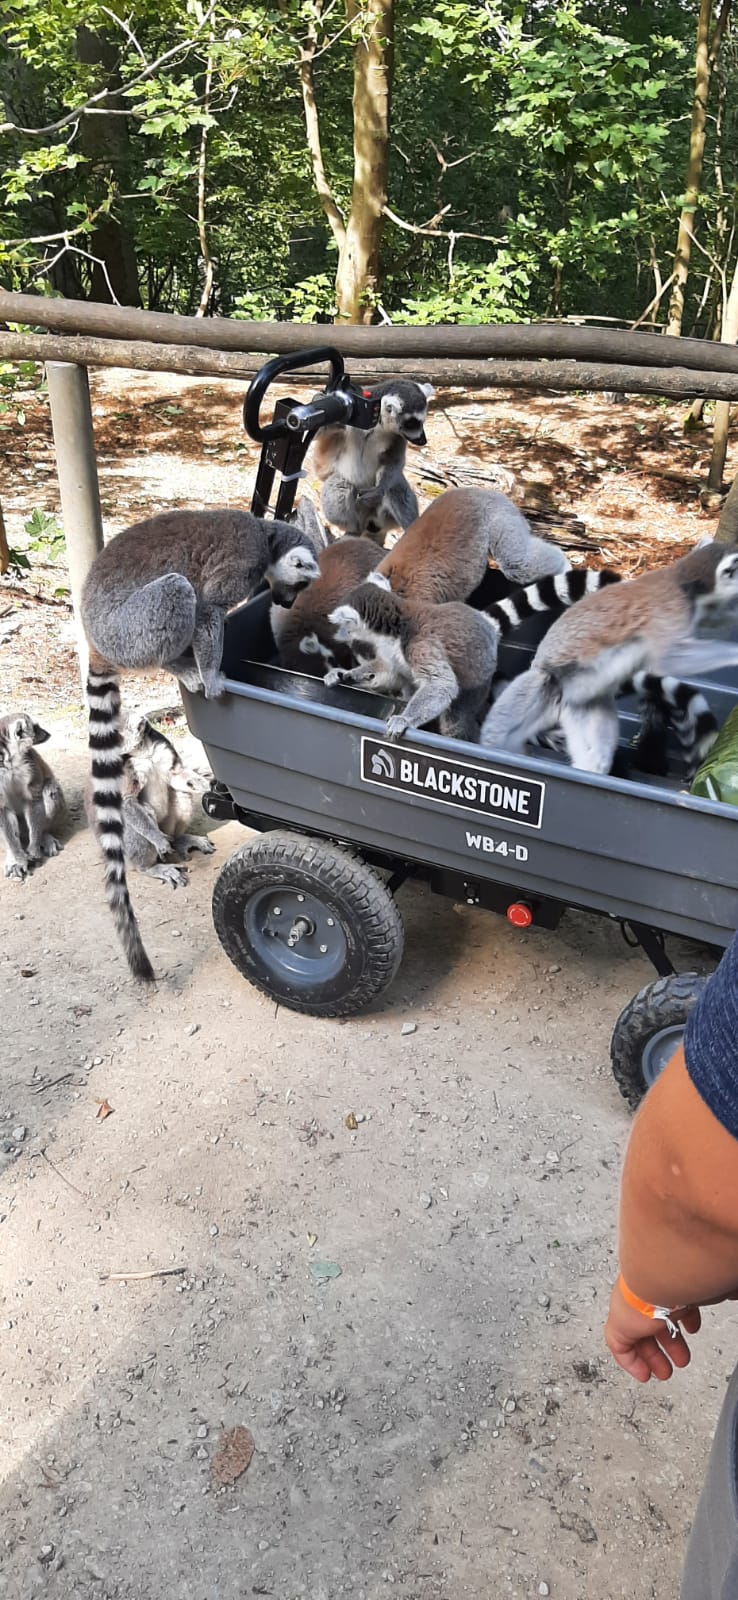 Lauter kleine Affen, Kattas, sitzen dicht gedrängt in einem Handwagen.